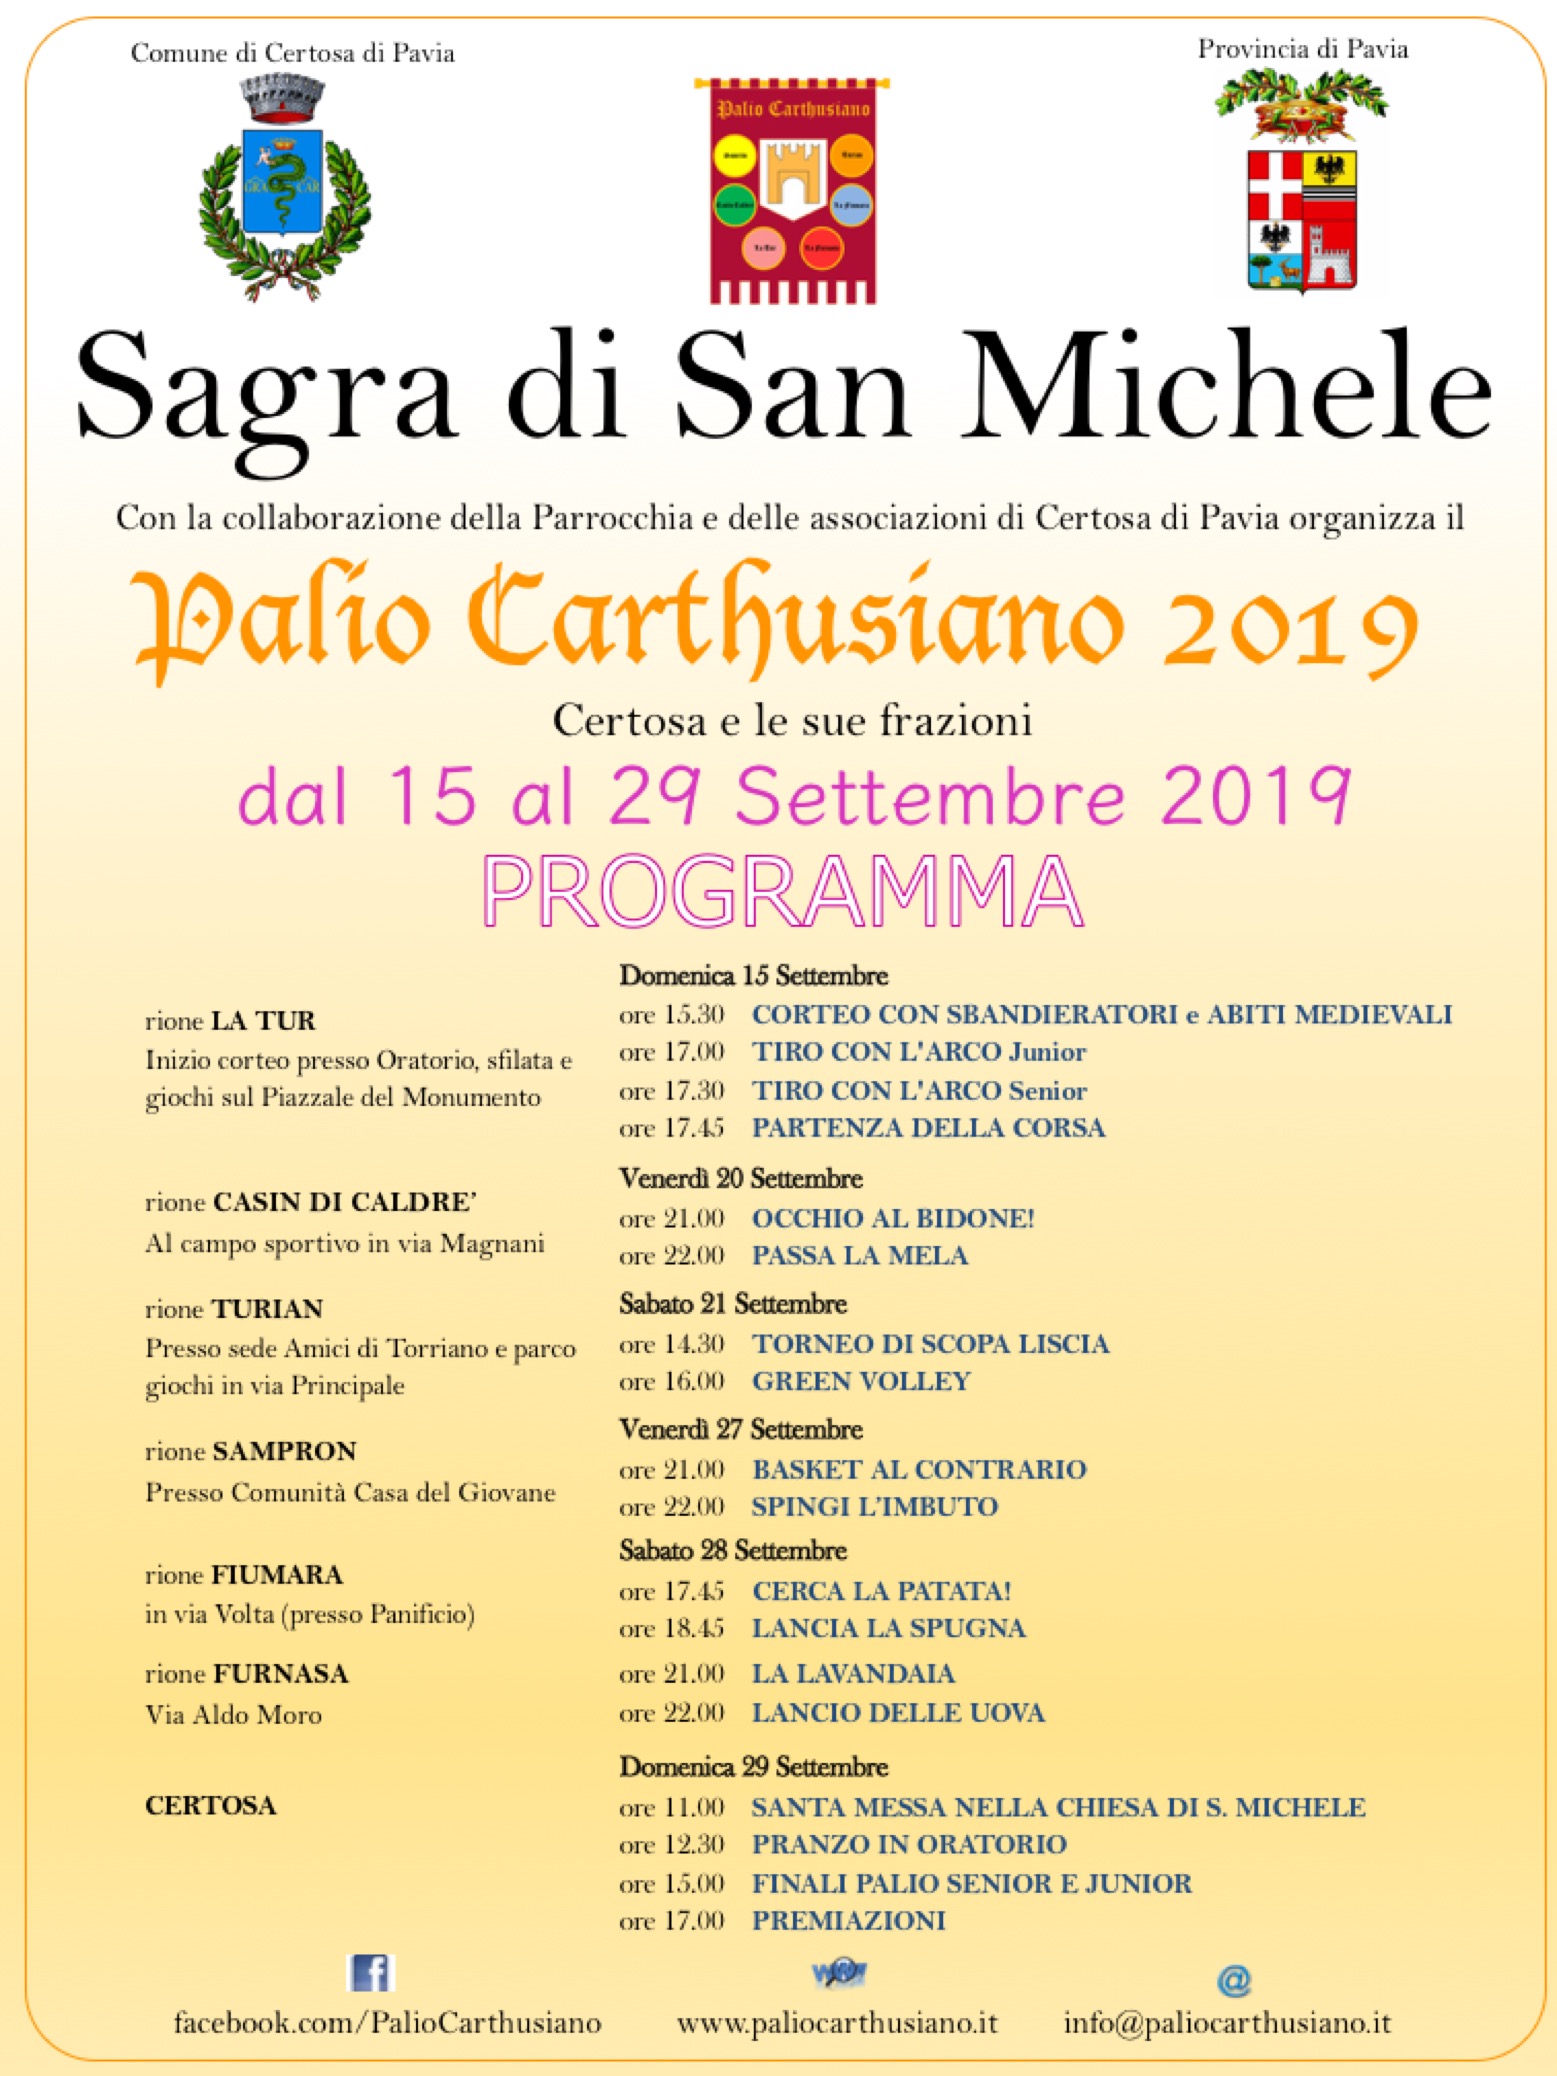 Palio Carthusano - 15 - 29 settembre 2019 - Certosa di Pavia